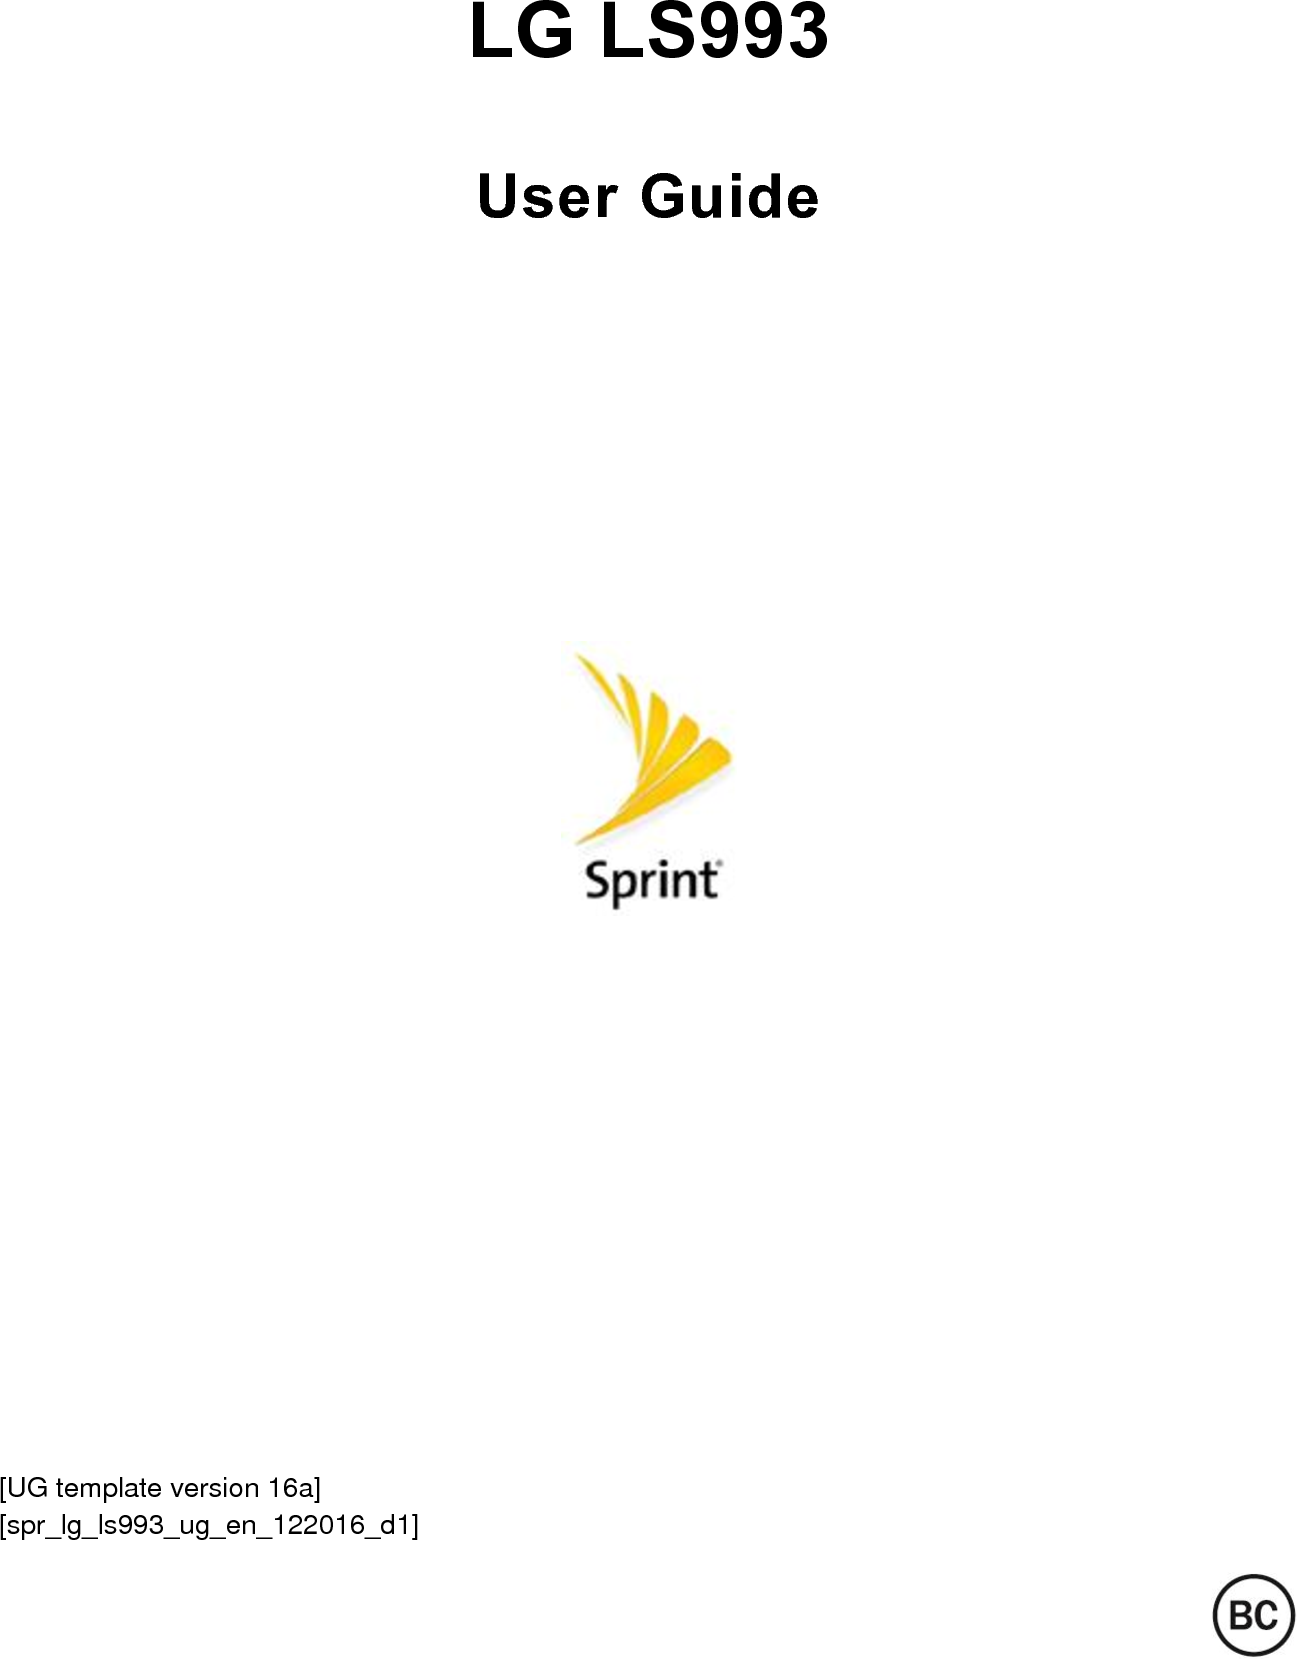  LG LS993 User Guide          [UG template version 16a]  [spr_lg_ls993_ug_en_122016_d1]  